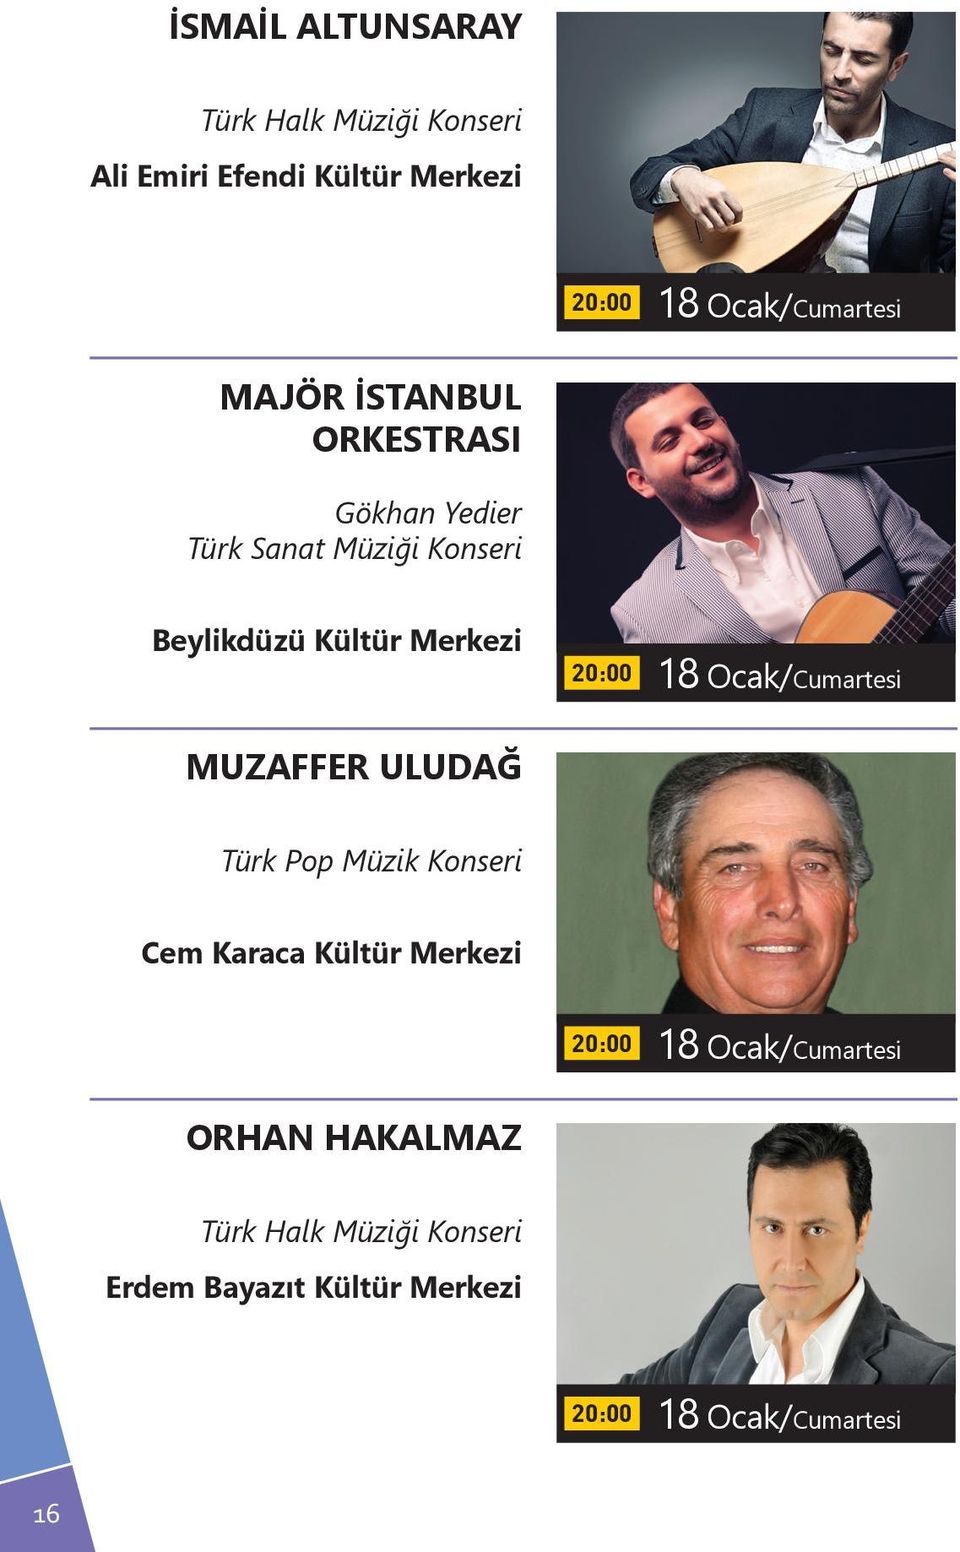 ULUDAĞ Türk Pop Müzik Konseri Cem Karaca Kültür Merkezi 18